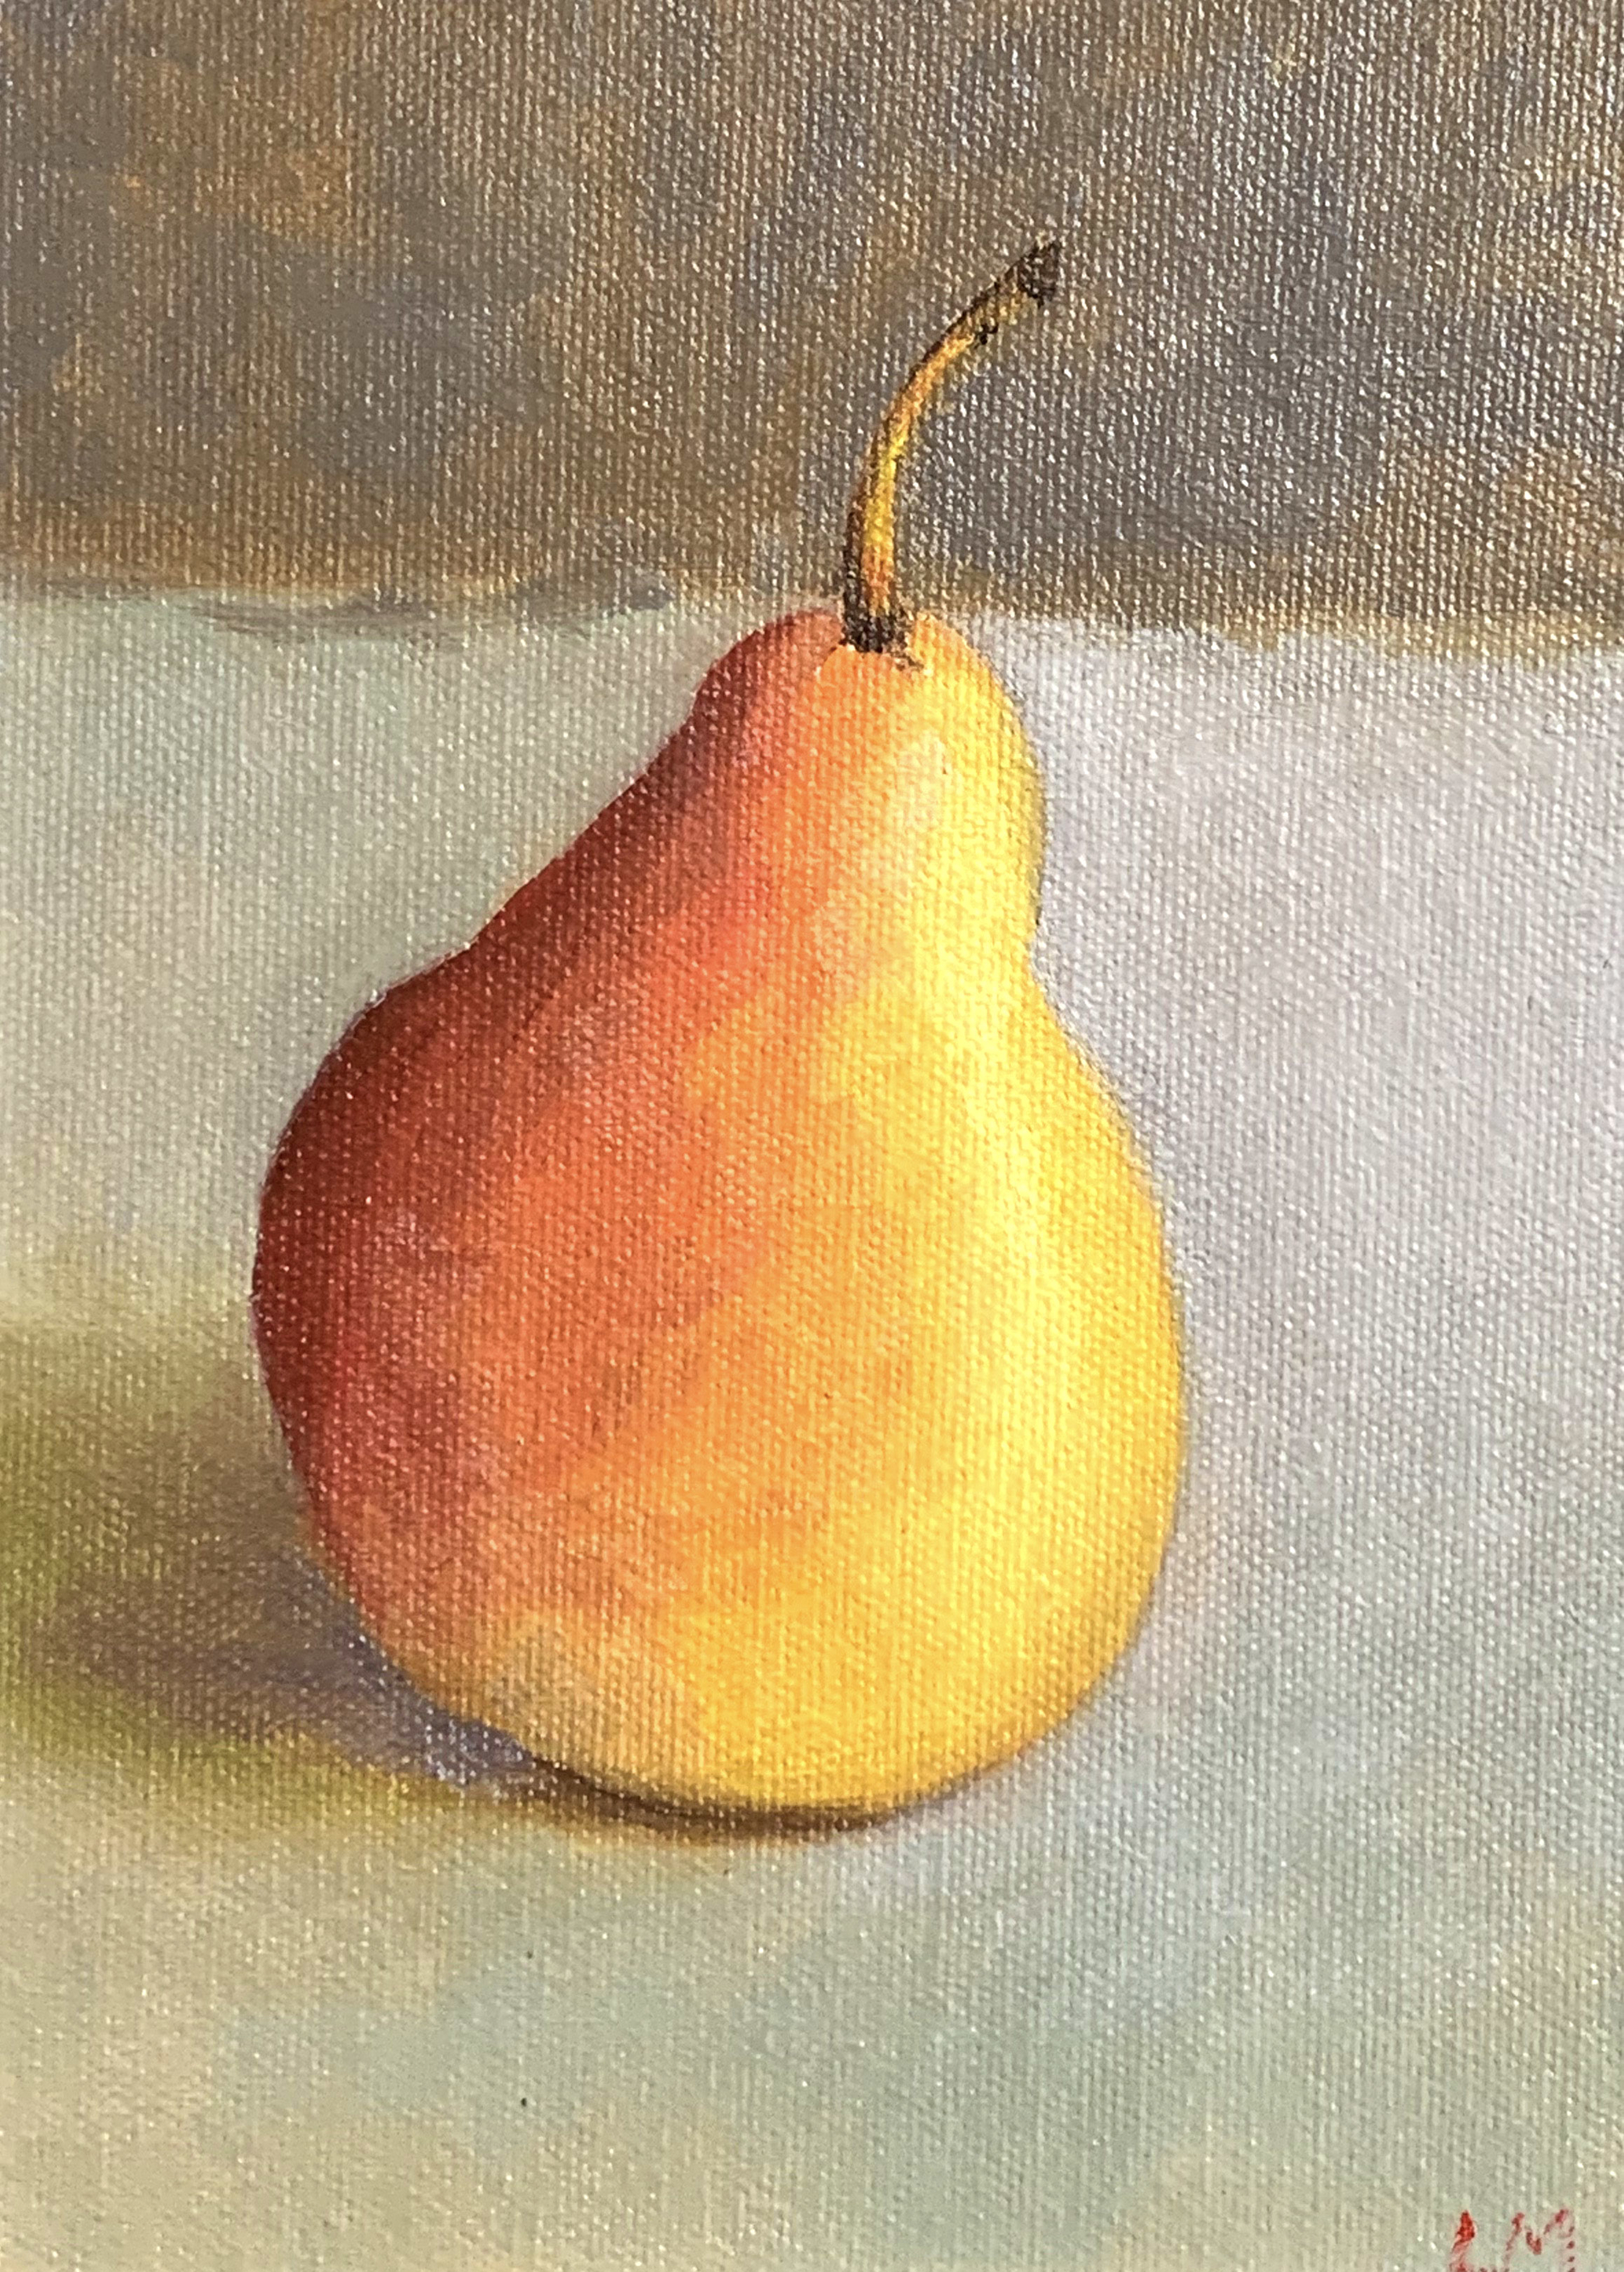 Bartlett Pear by Laura Murphey